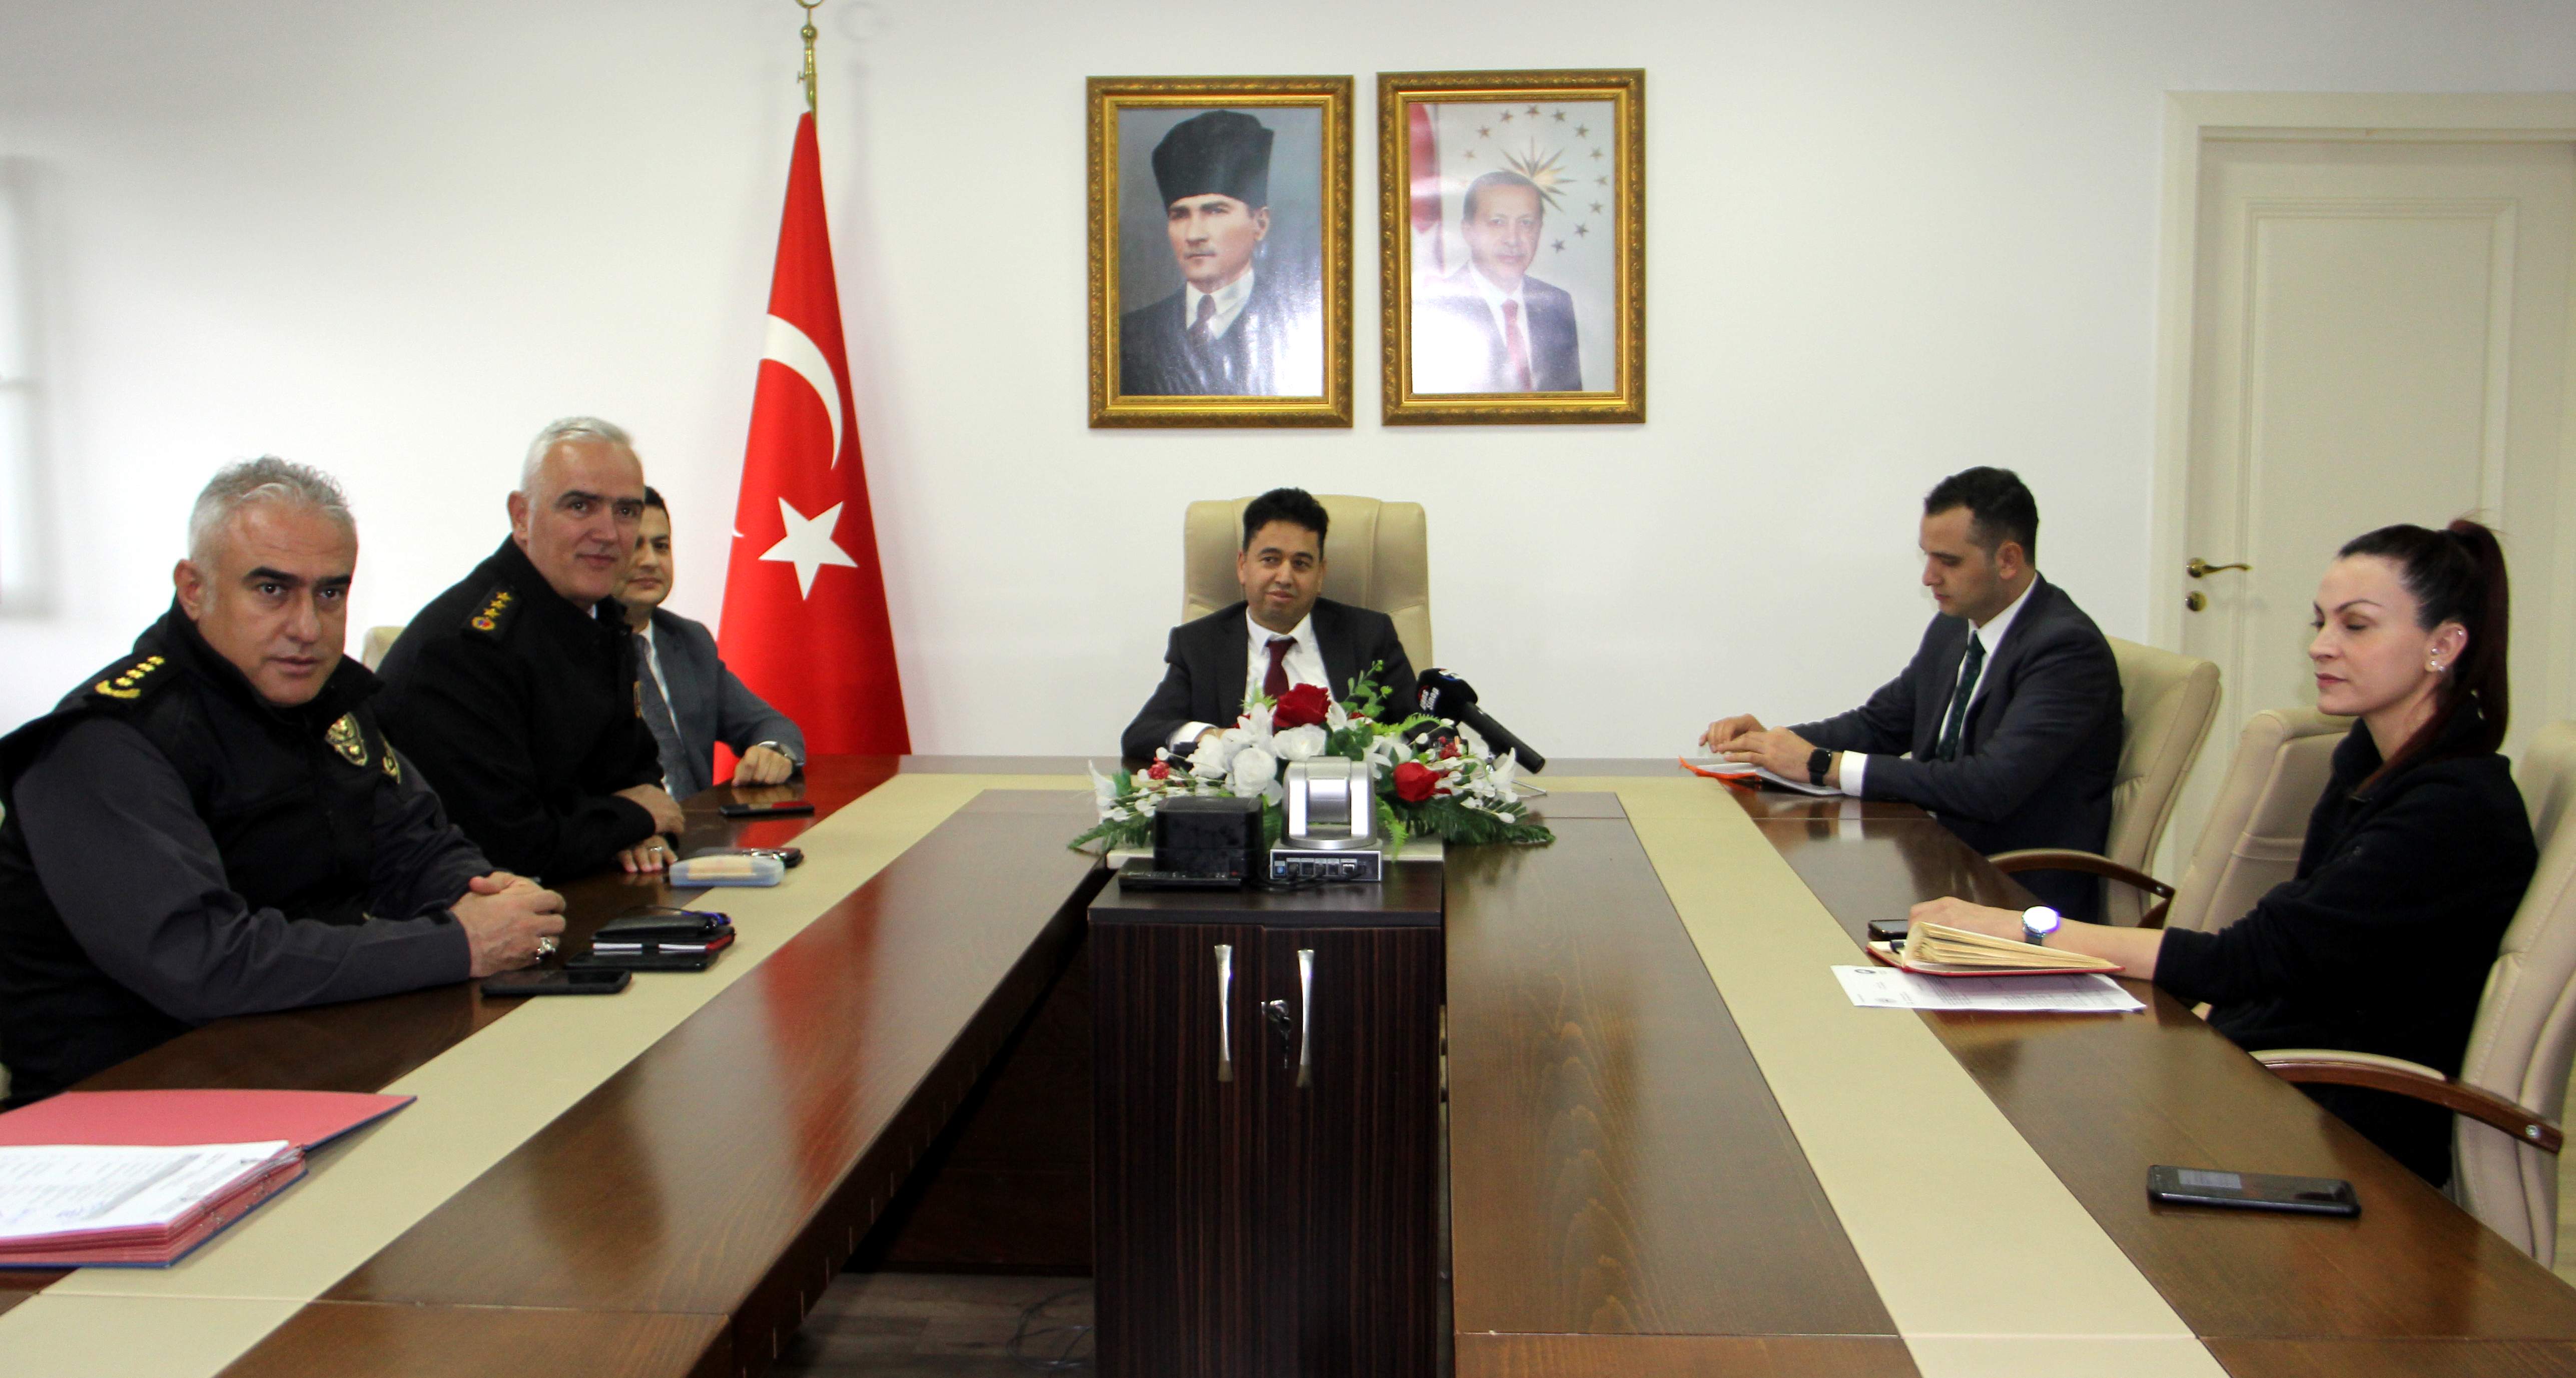 Sinop’ta seçim güvenliğiyle ilgili bilgilendirme toplantısı yapıldı